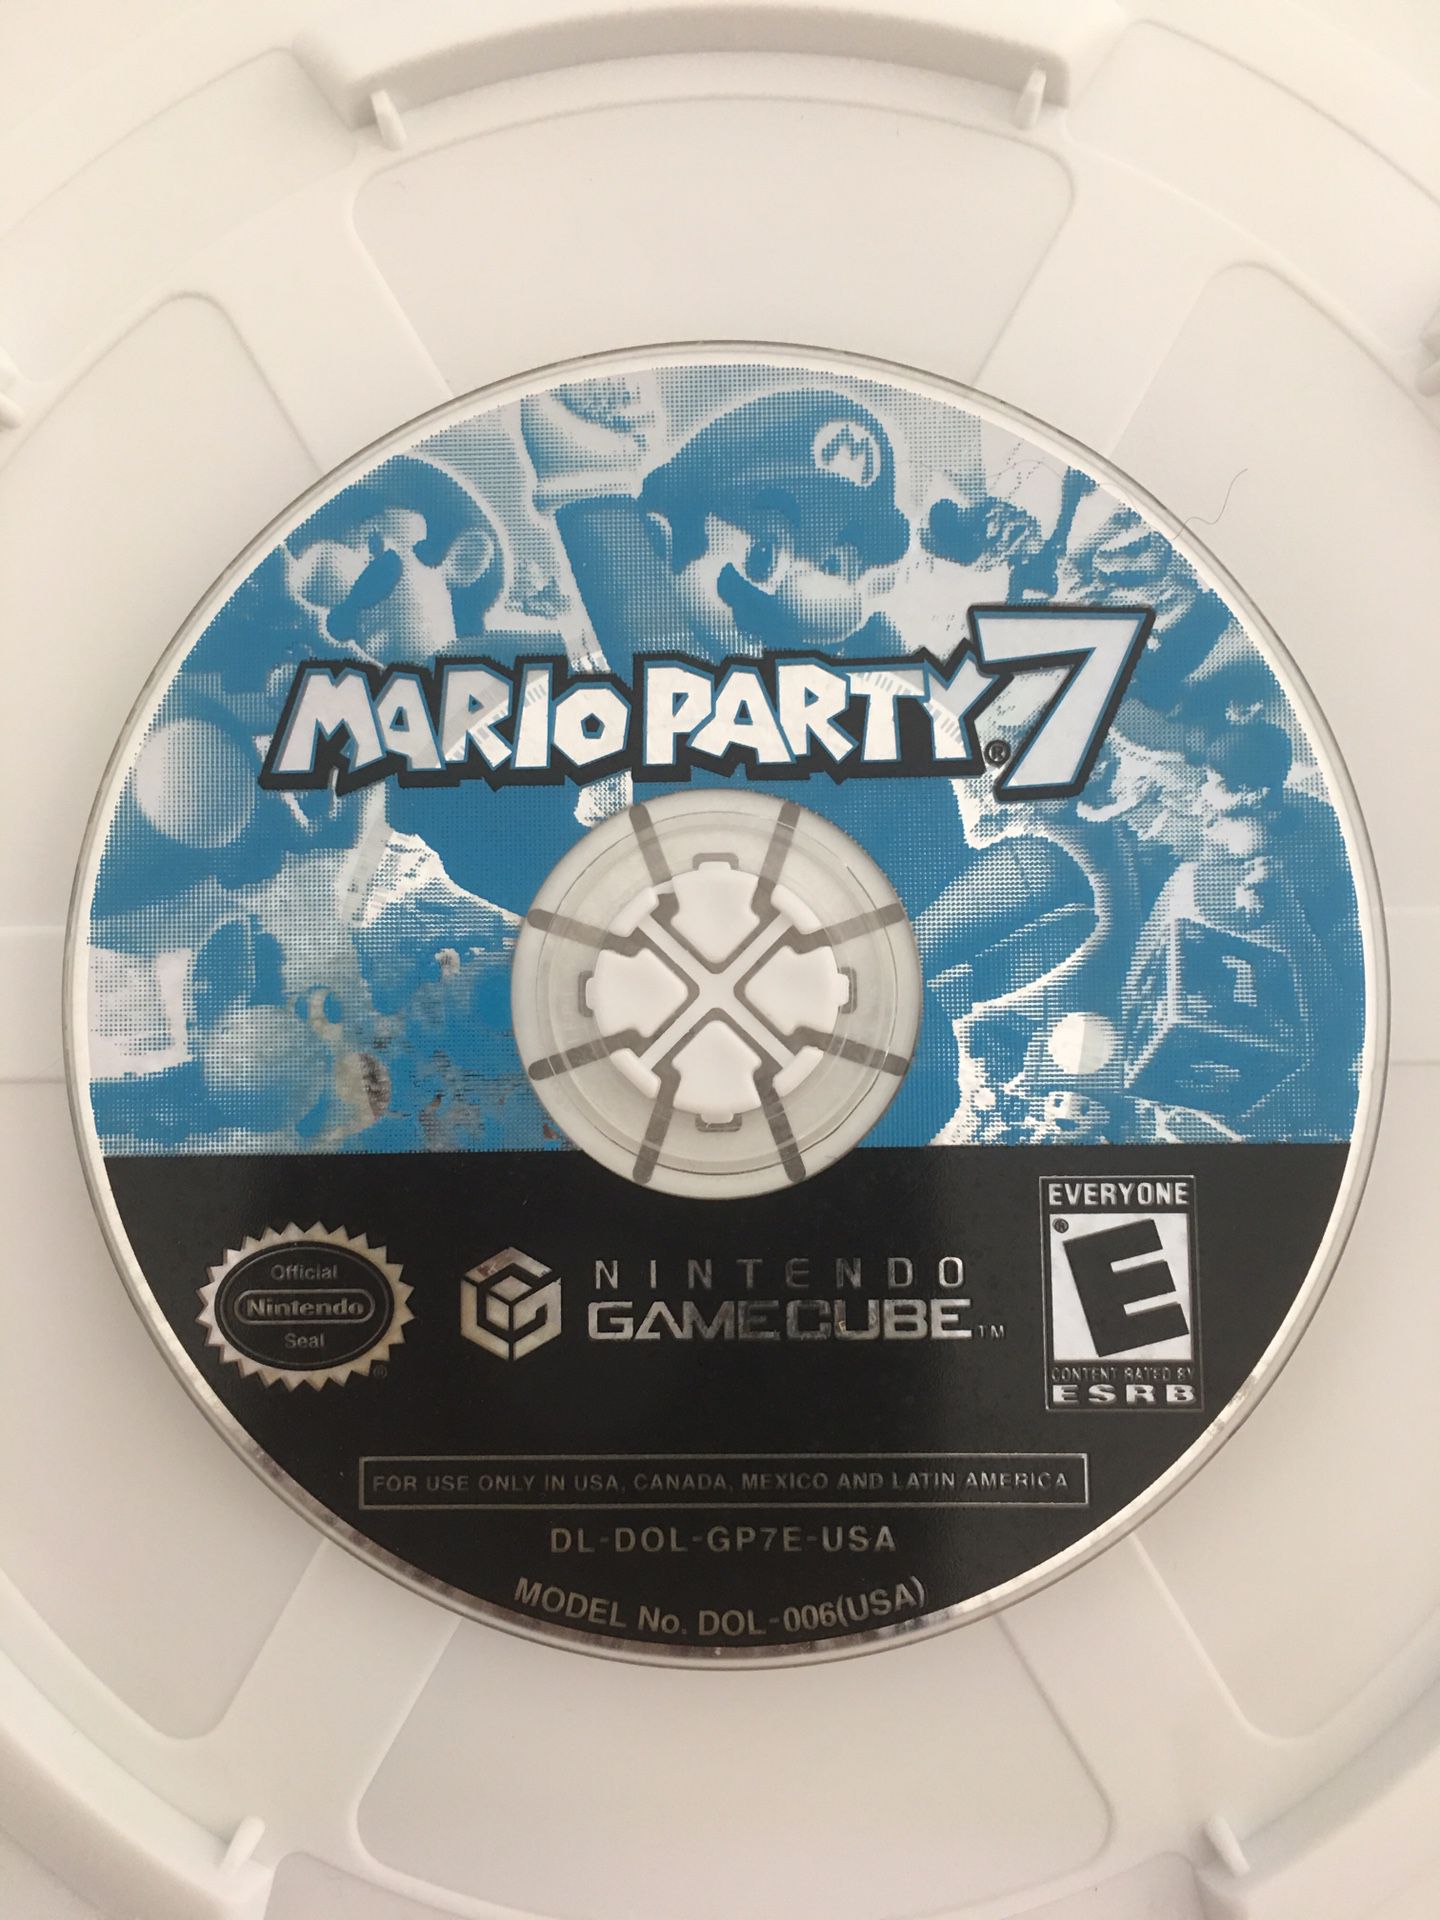 Mario Party 7 for Nintendo GameCube